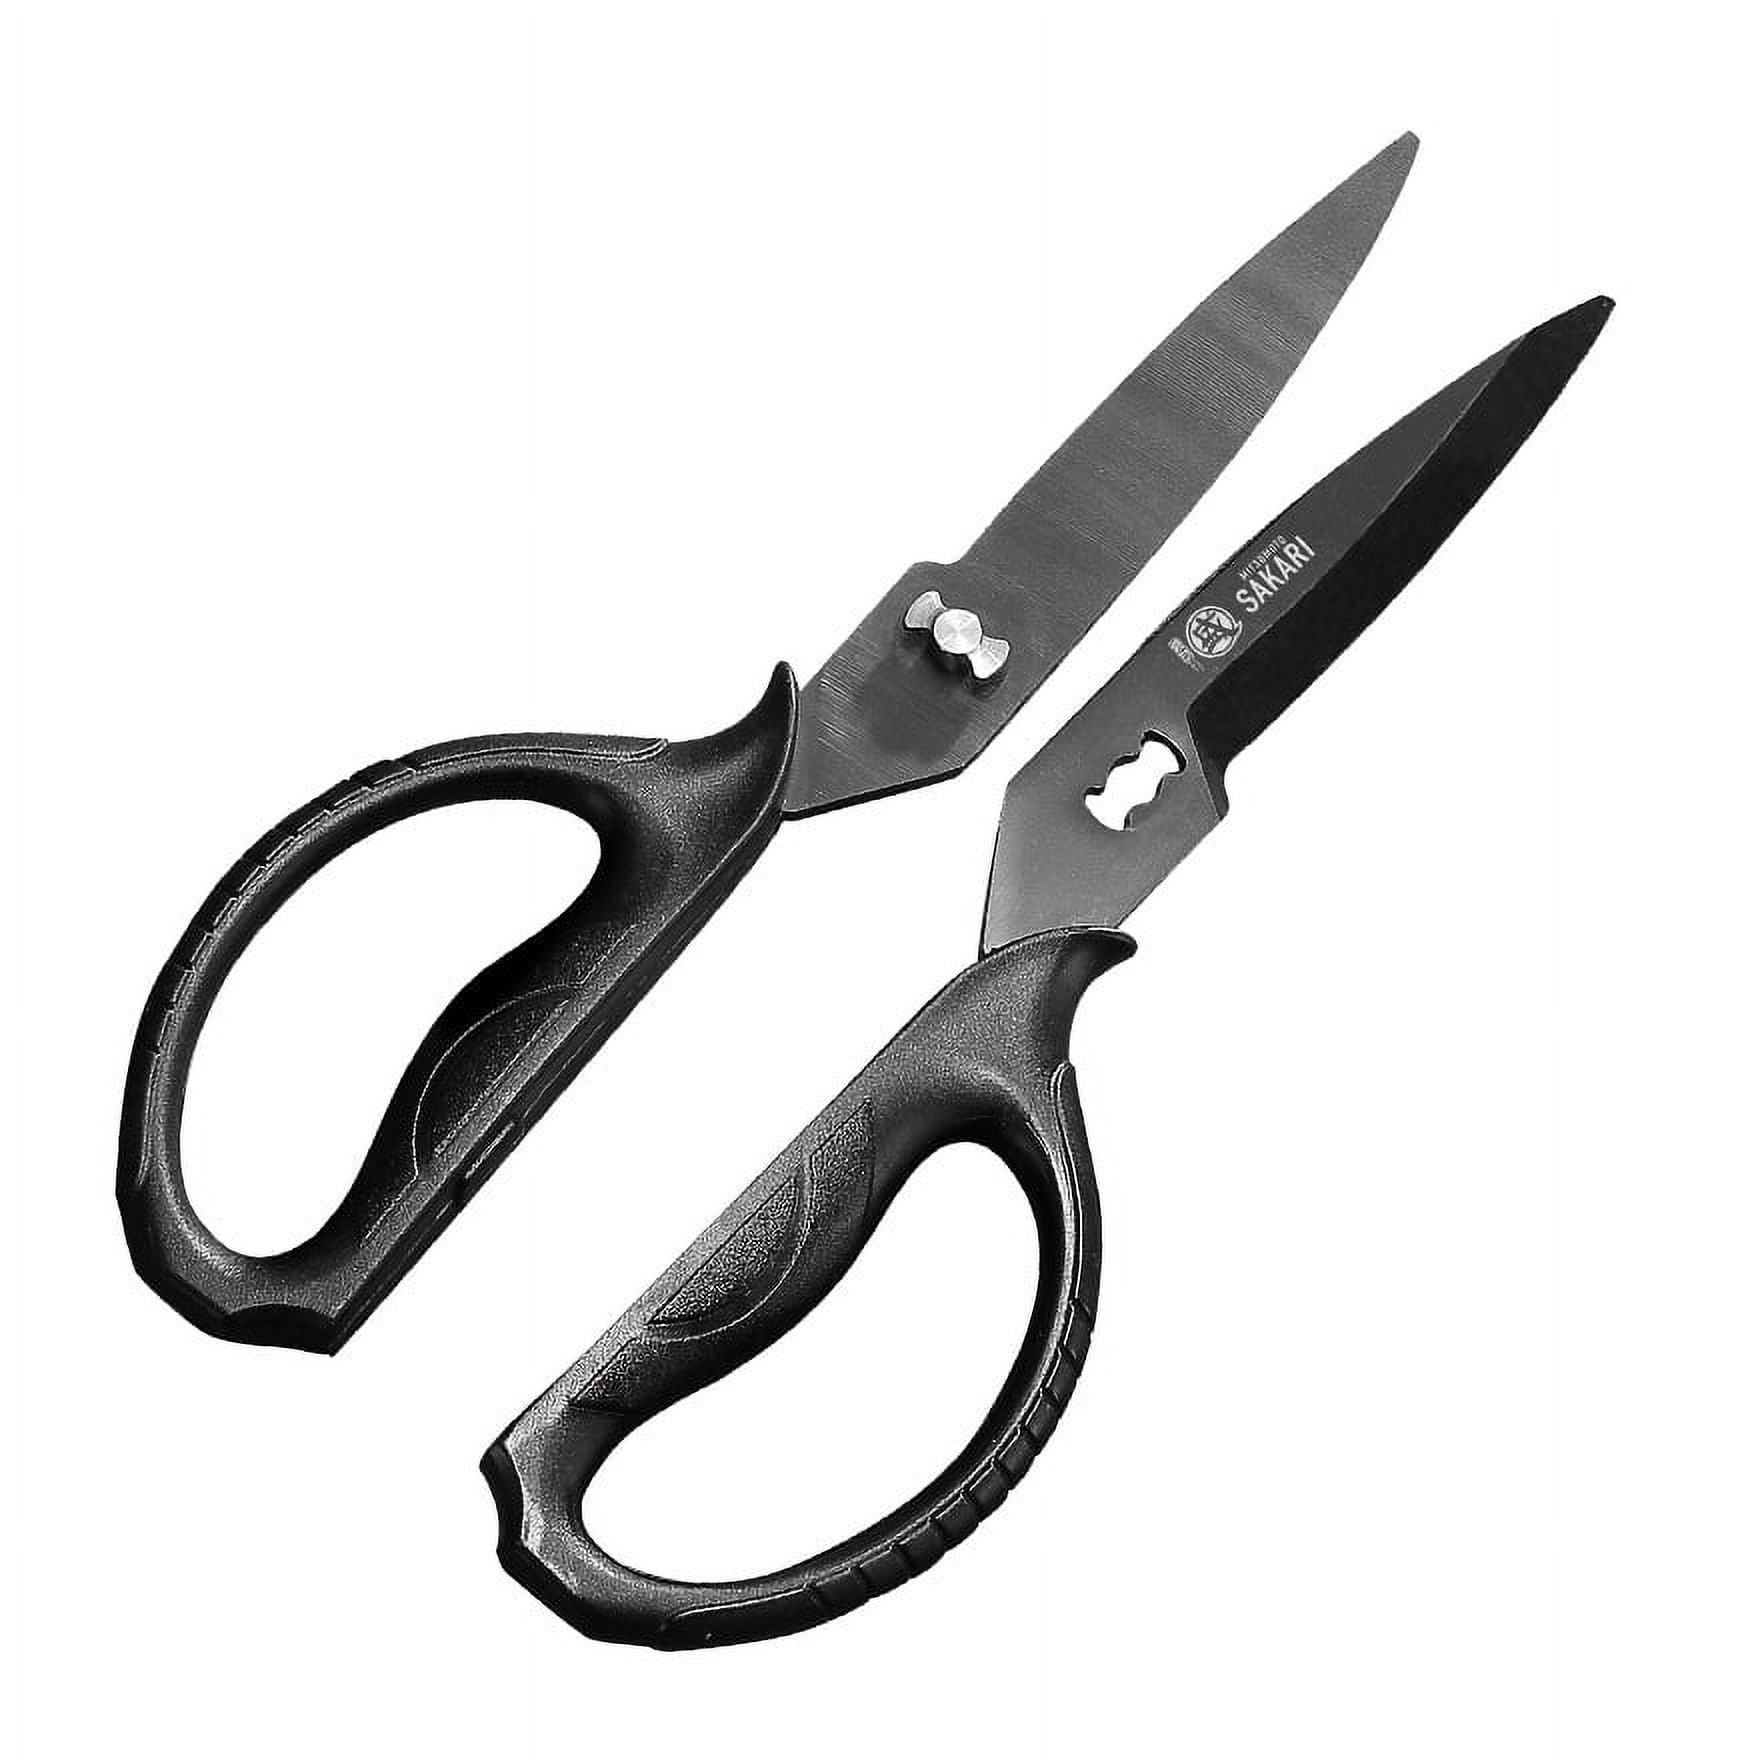 Muerk Upgrade Heavy Duty Stainless Steel Kitchen Scissors